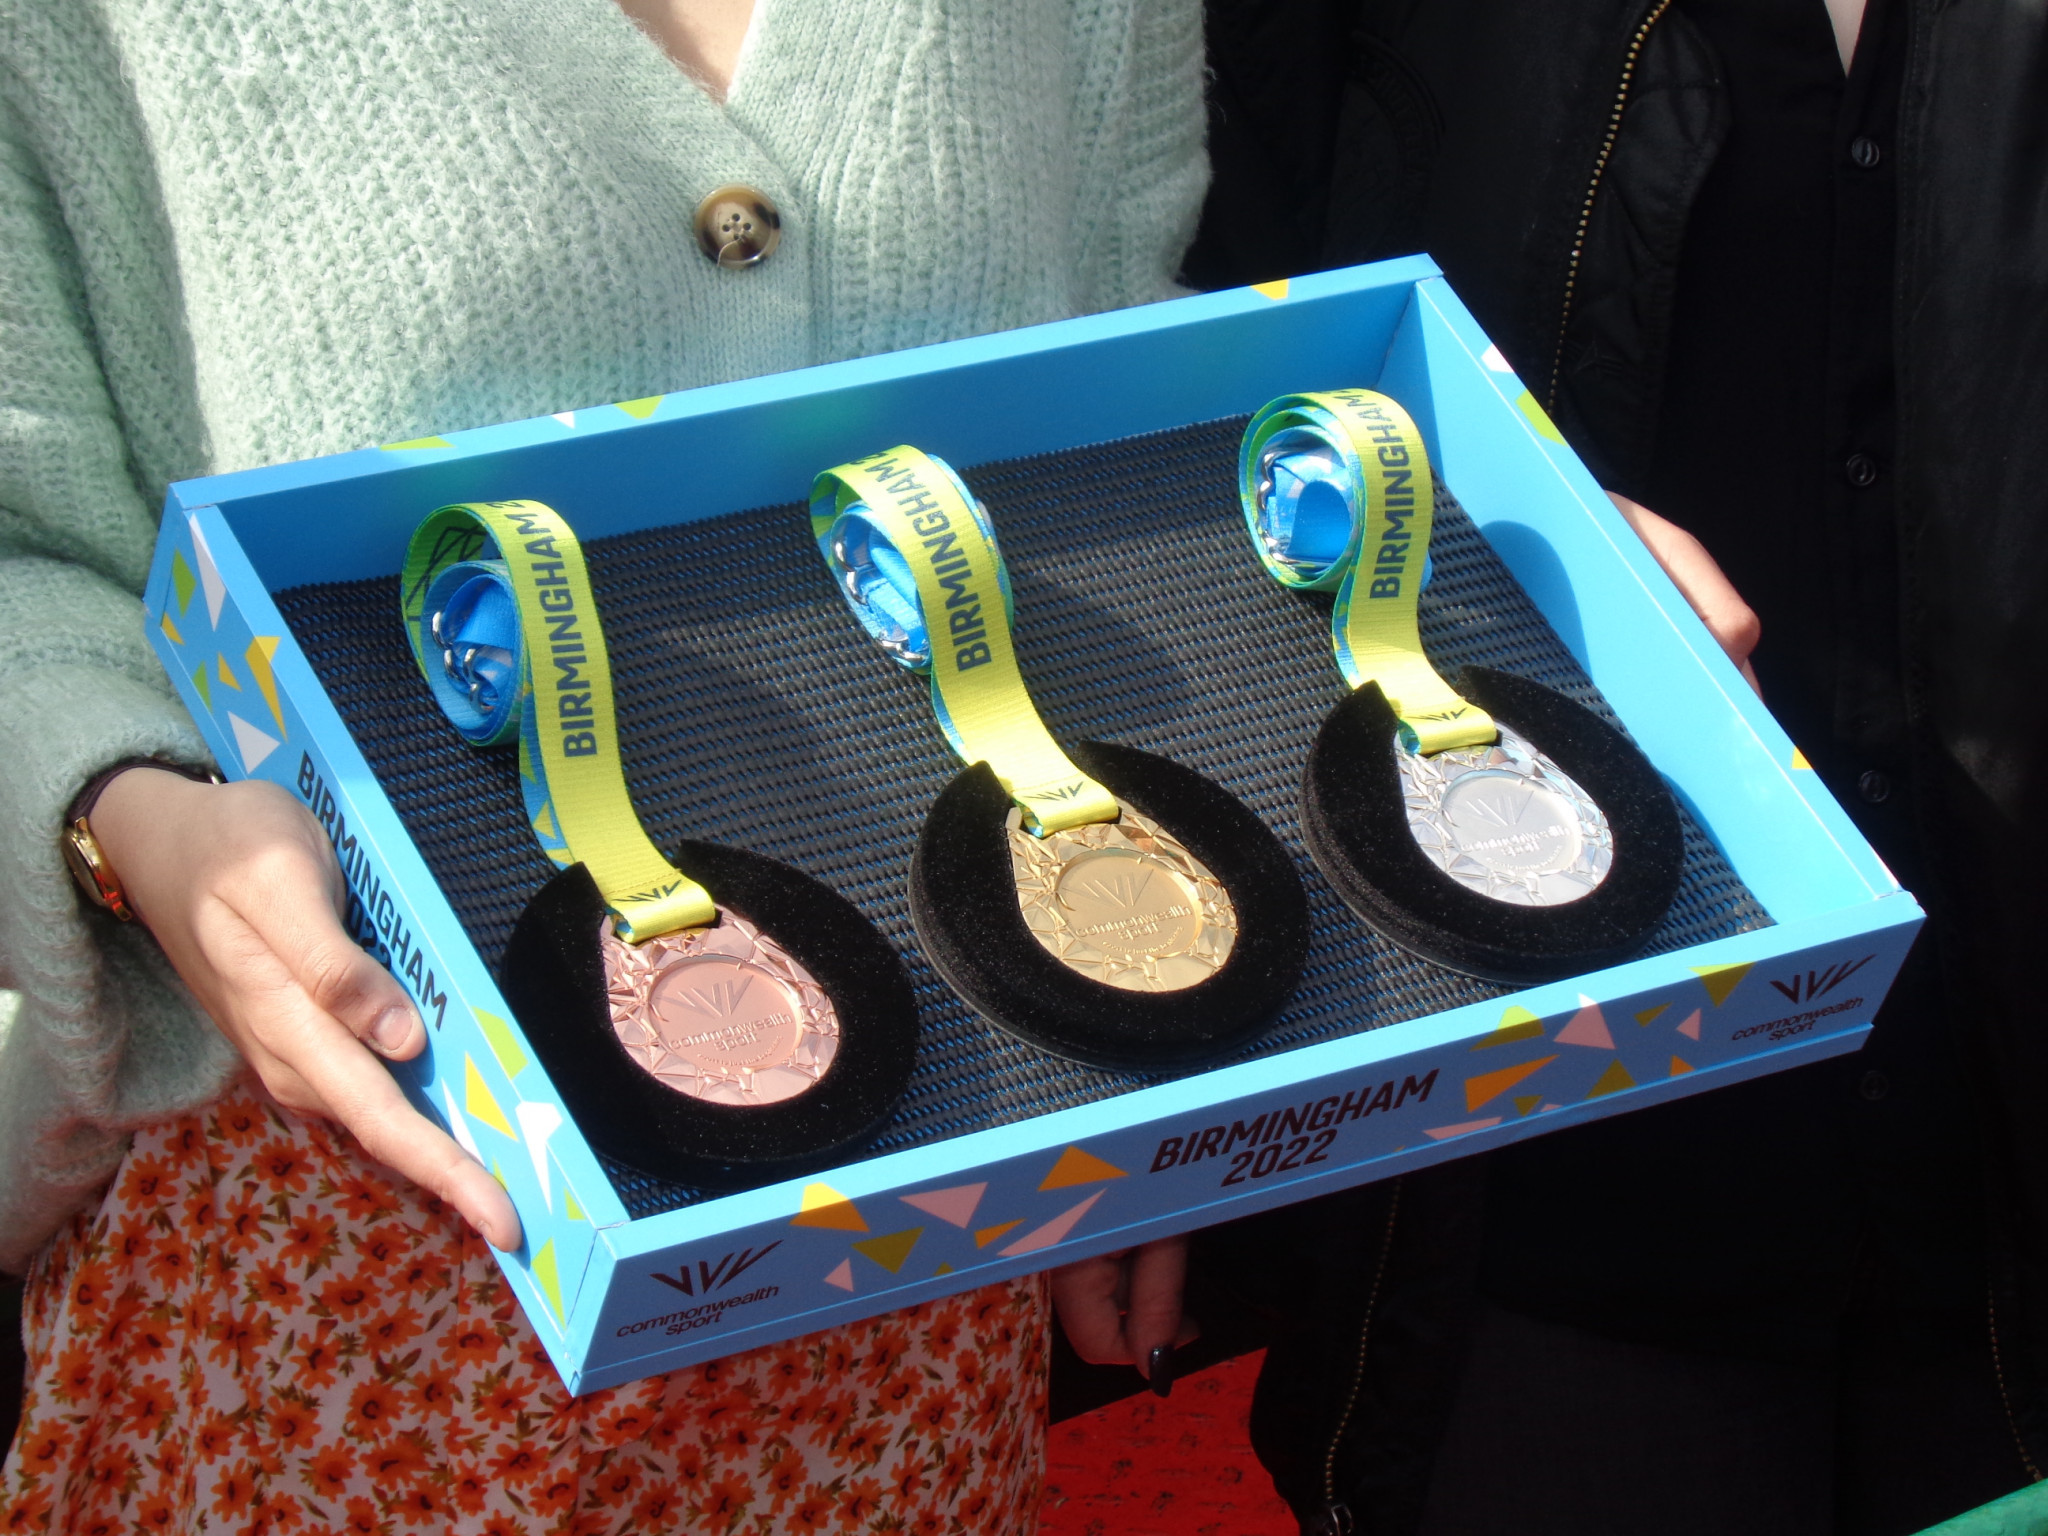 Medallas Juegos de la Commonwealth de Birmingham 2022 son presentadas